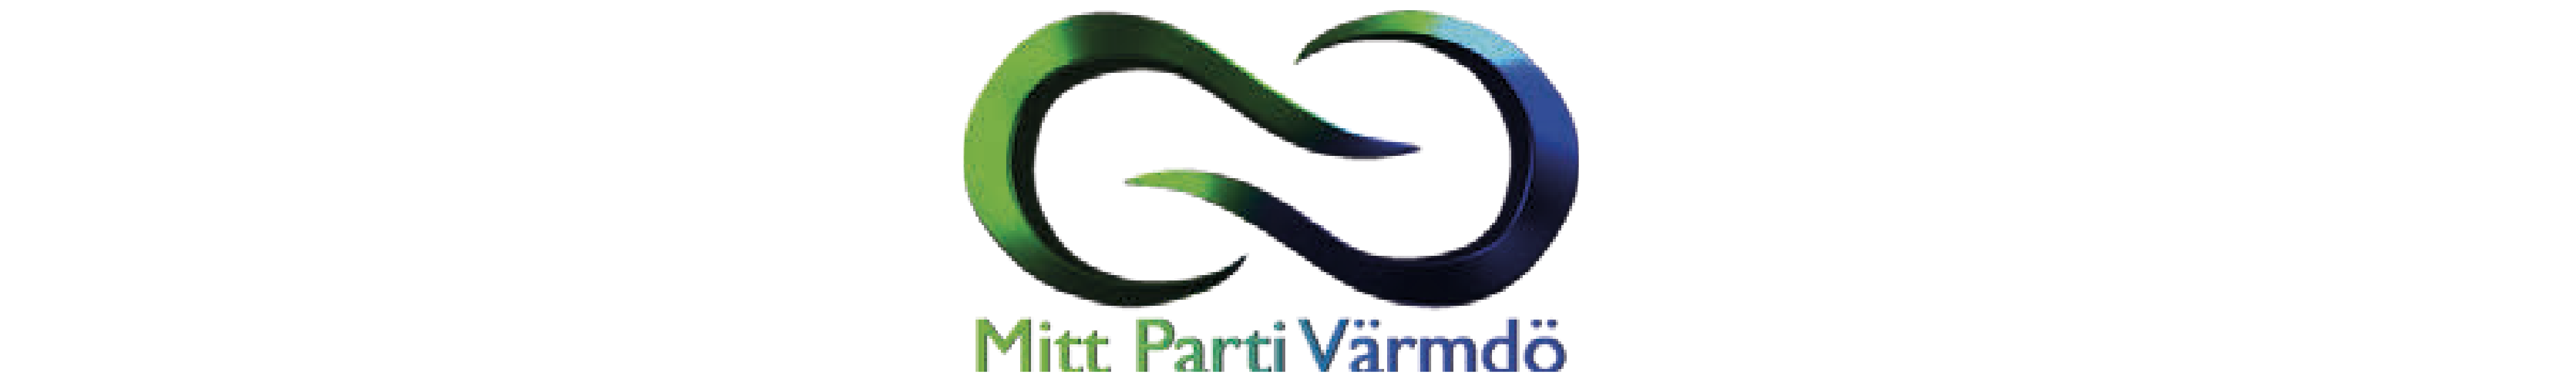 Symbol för Mitt parti Värmdö, en evighetssymbol i blått och grönt.